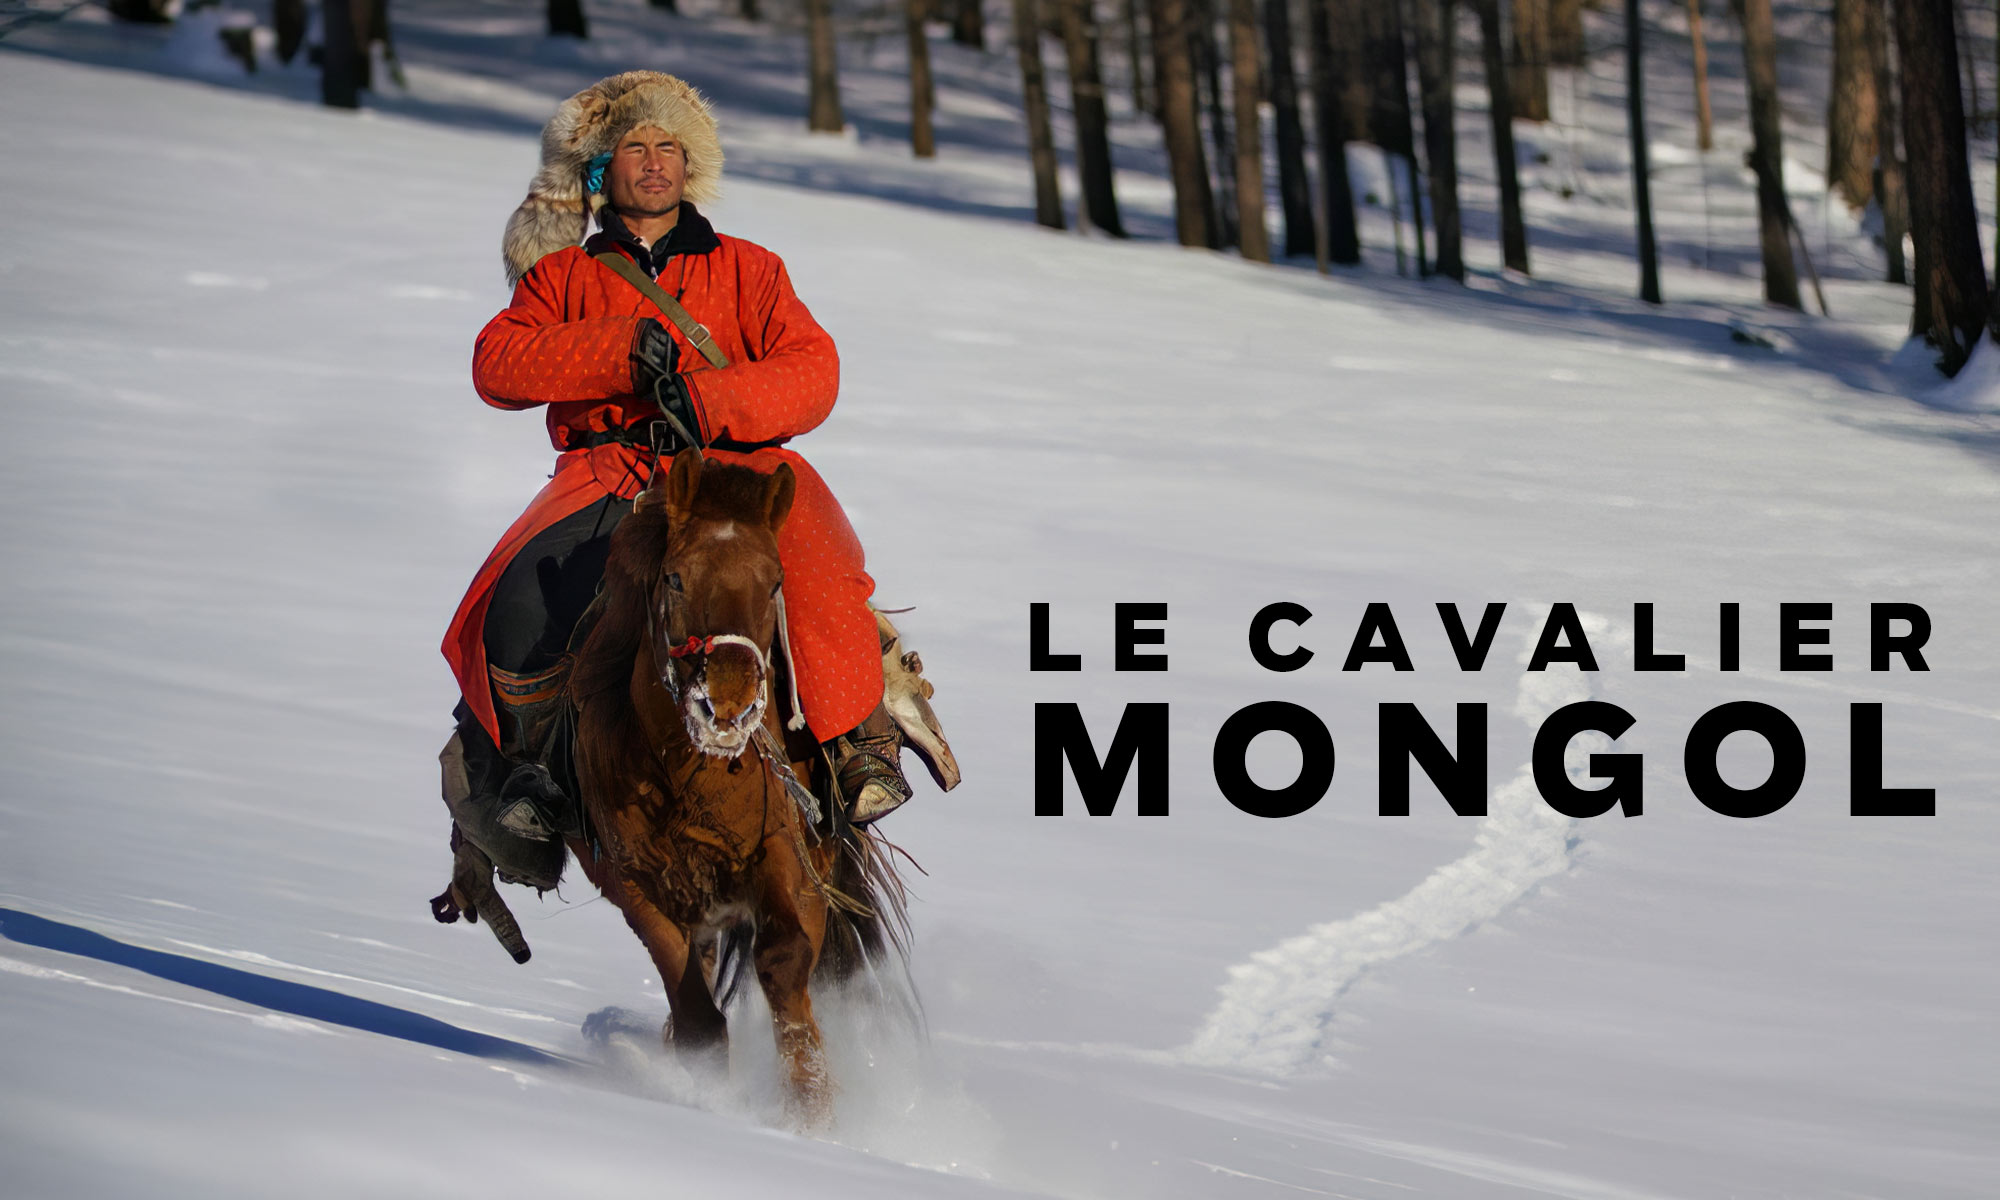 Le Cavalier Mongol